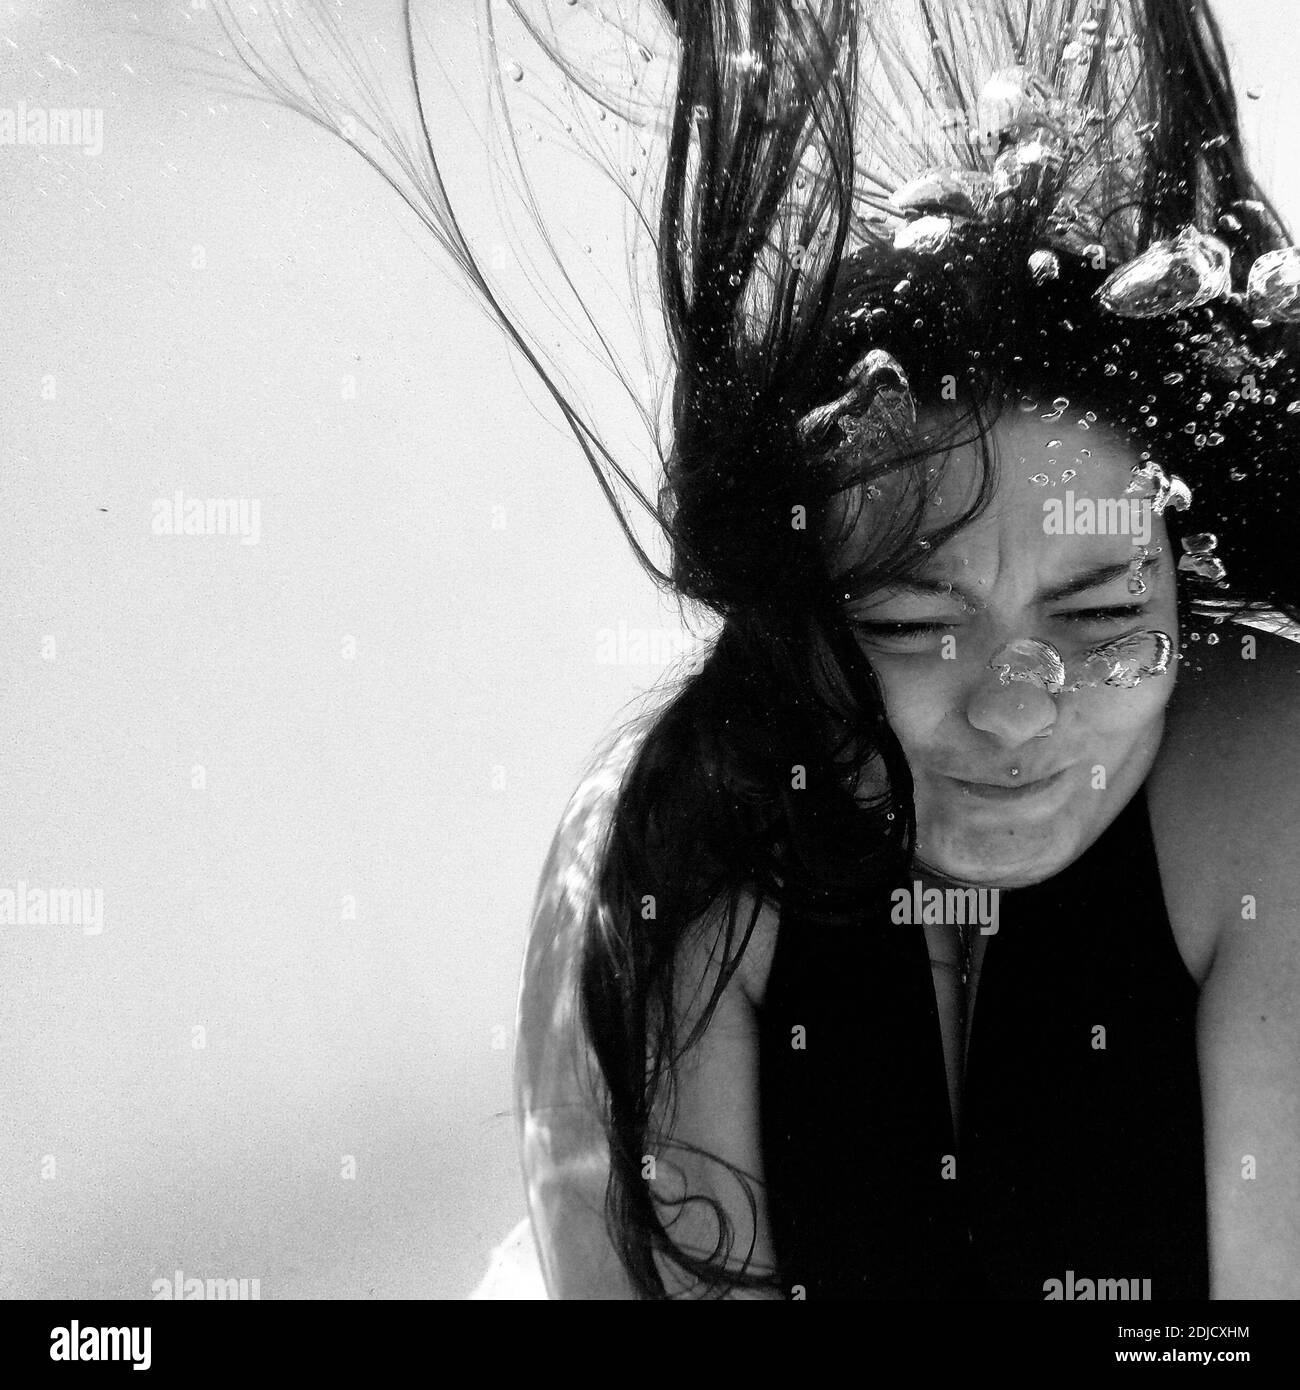 Woman Swimming In Pool Stock Photo - Alamy